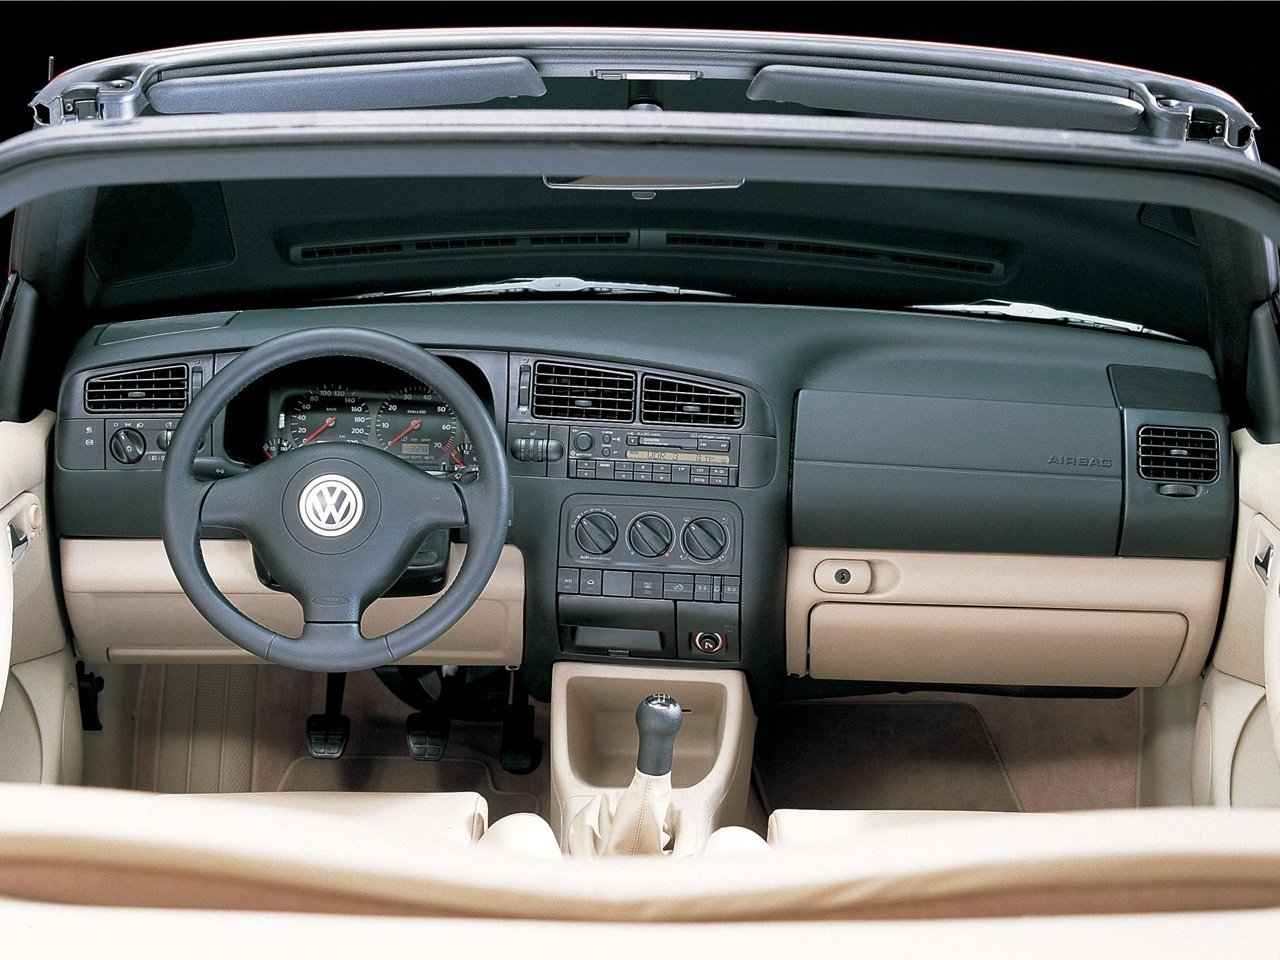 кабриолет Volkswagen Golf 1997 - 2003г выпуска модификация 1.6 AT (100 л.с.)